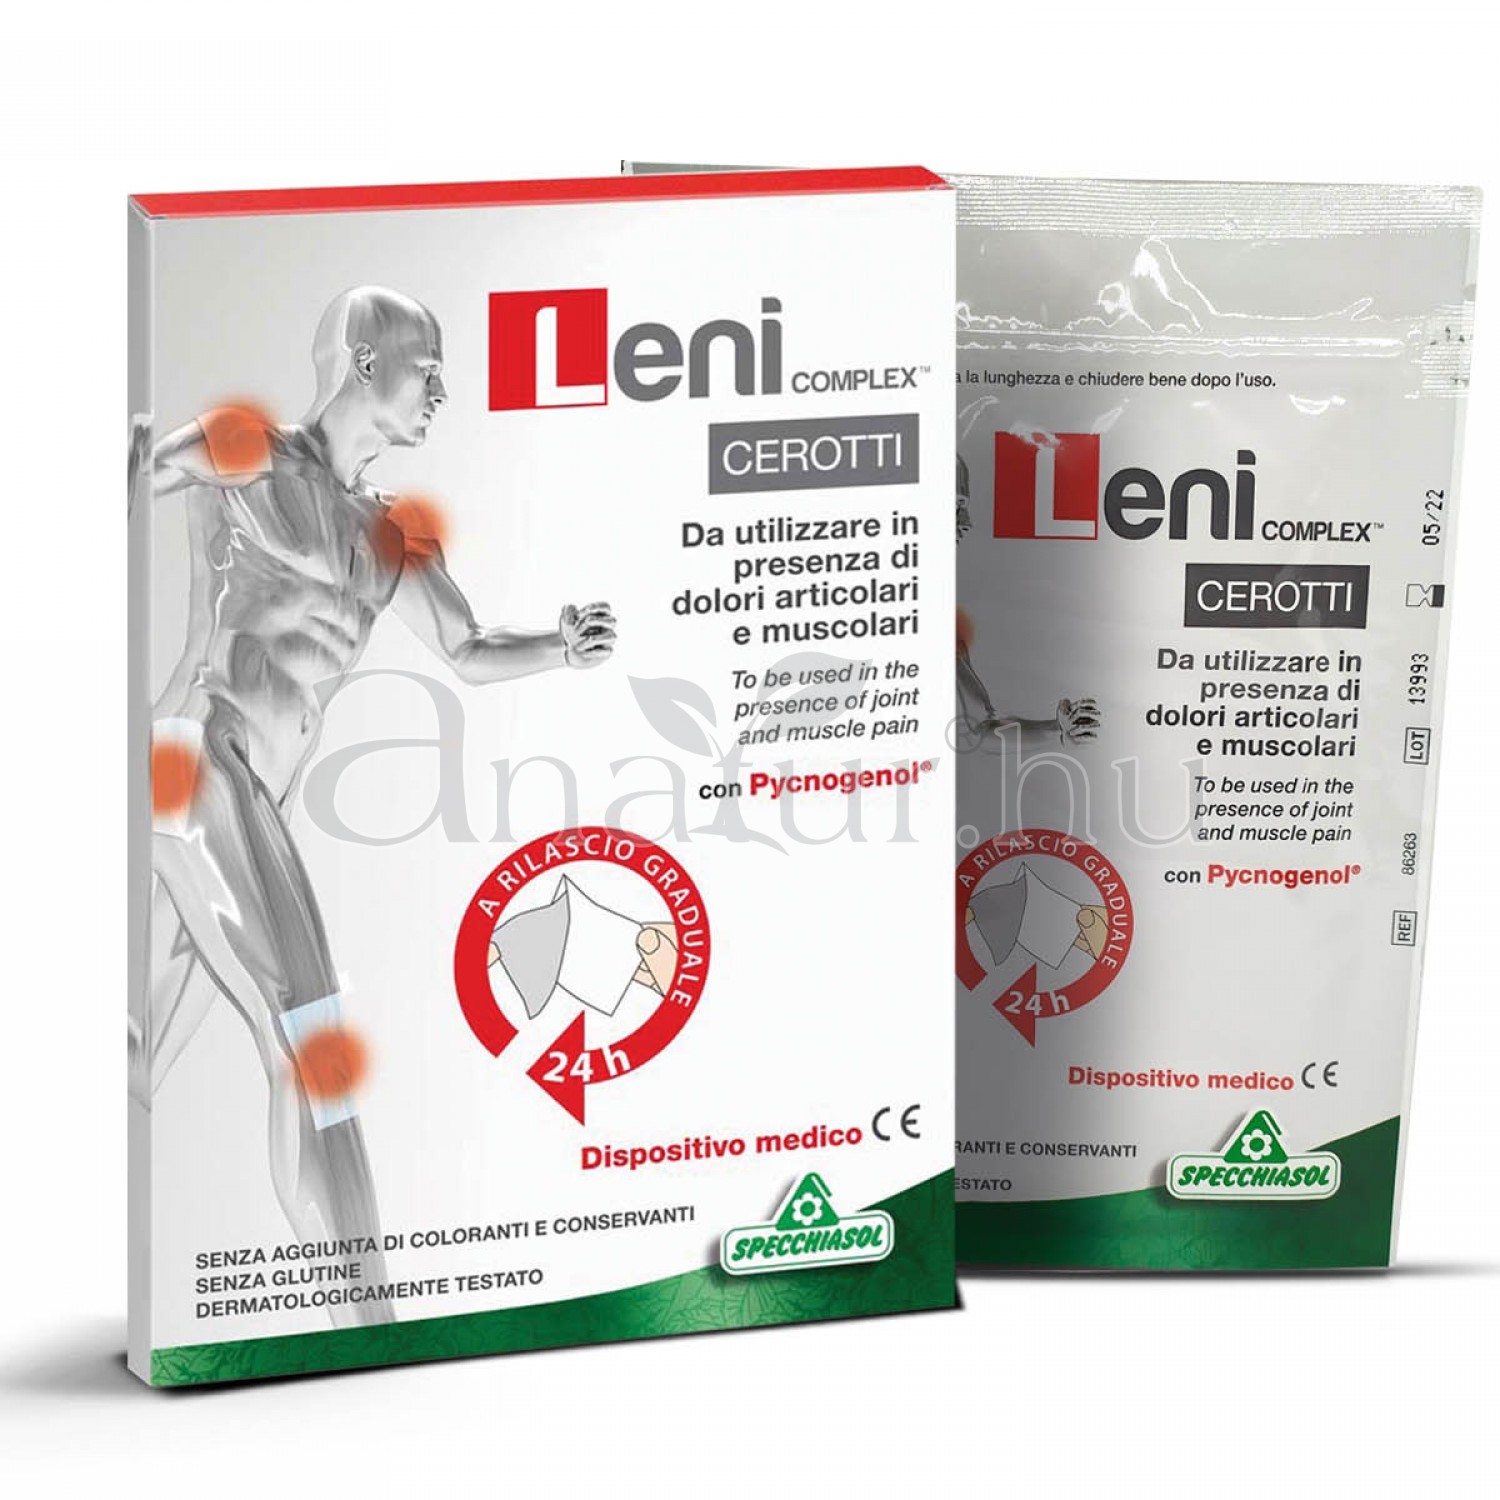 Specchiasol® Leni complex™ ízület tapasz 24 órás fájdalomcsillapító hatással!